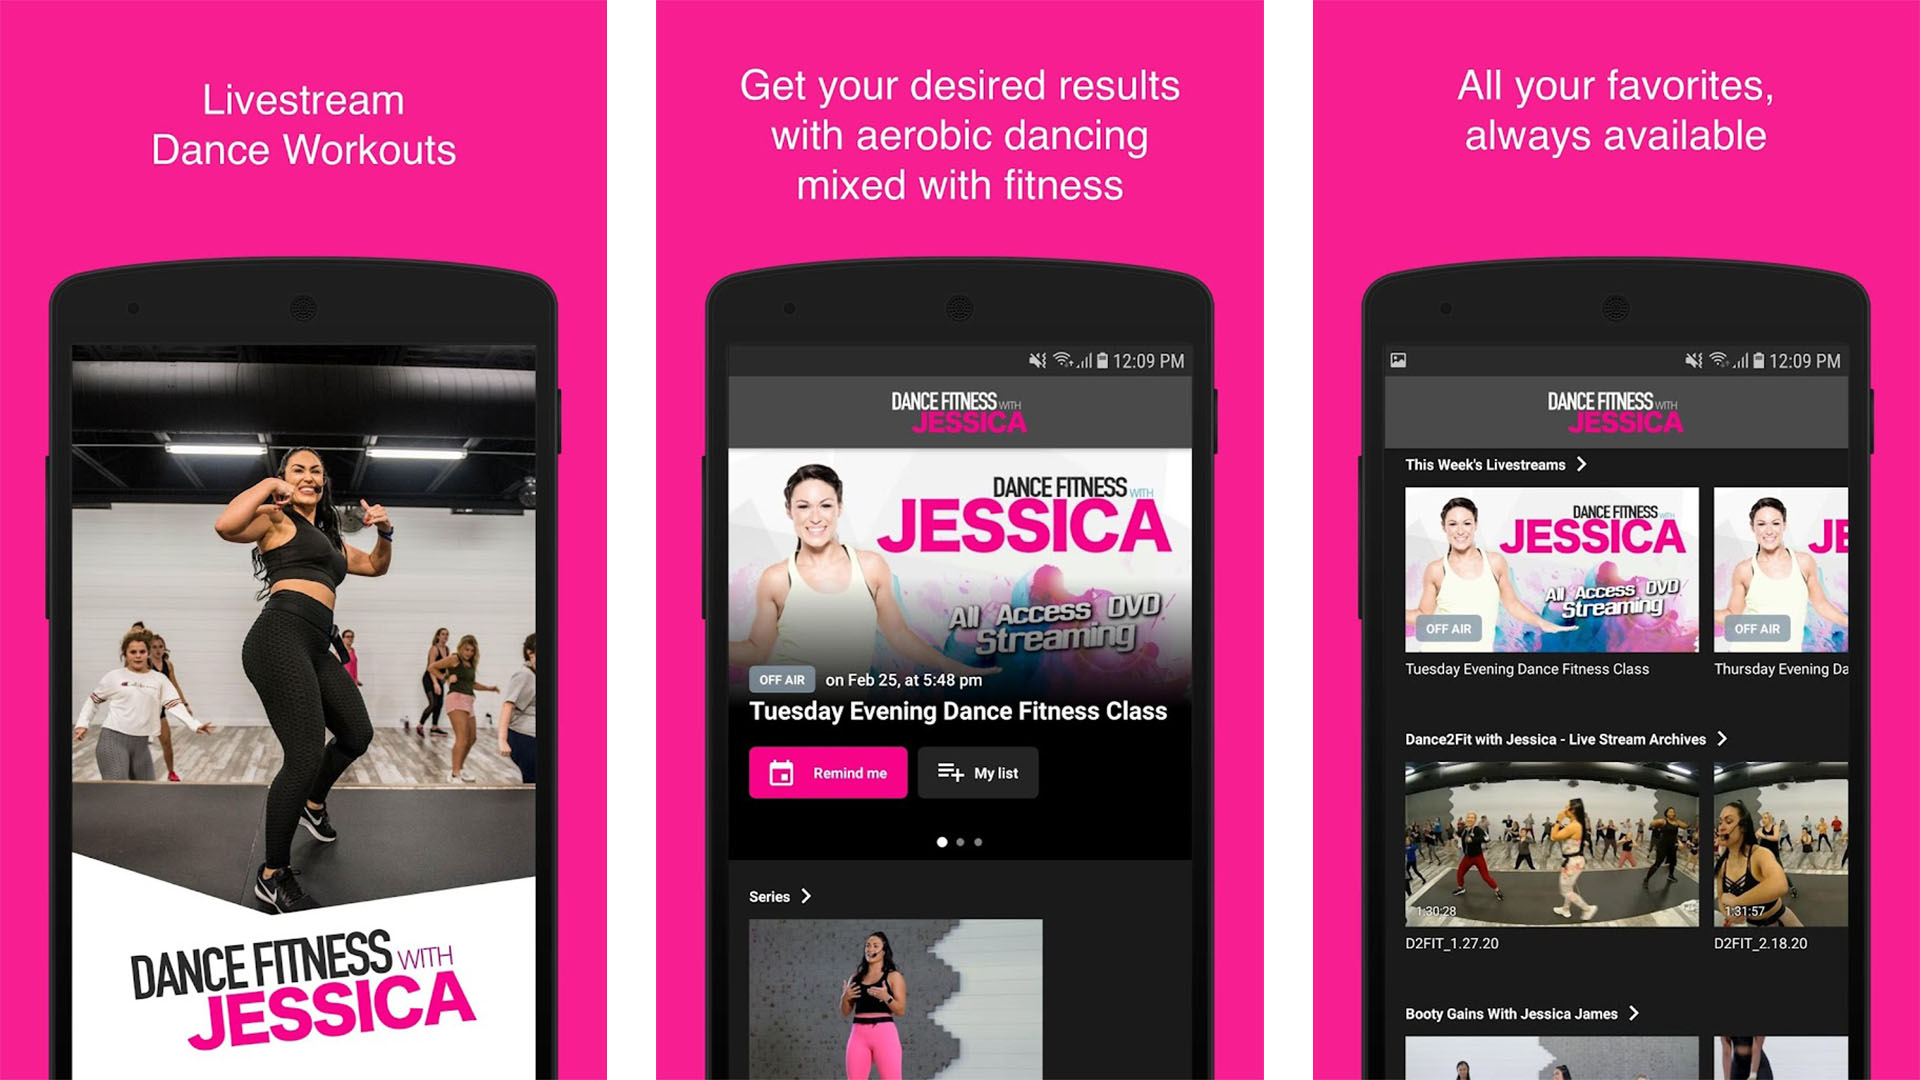 Dance Fitness con Jessica captura de pantalla 2022